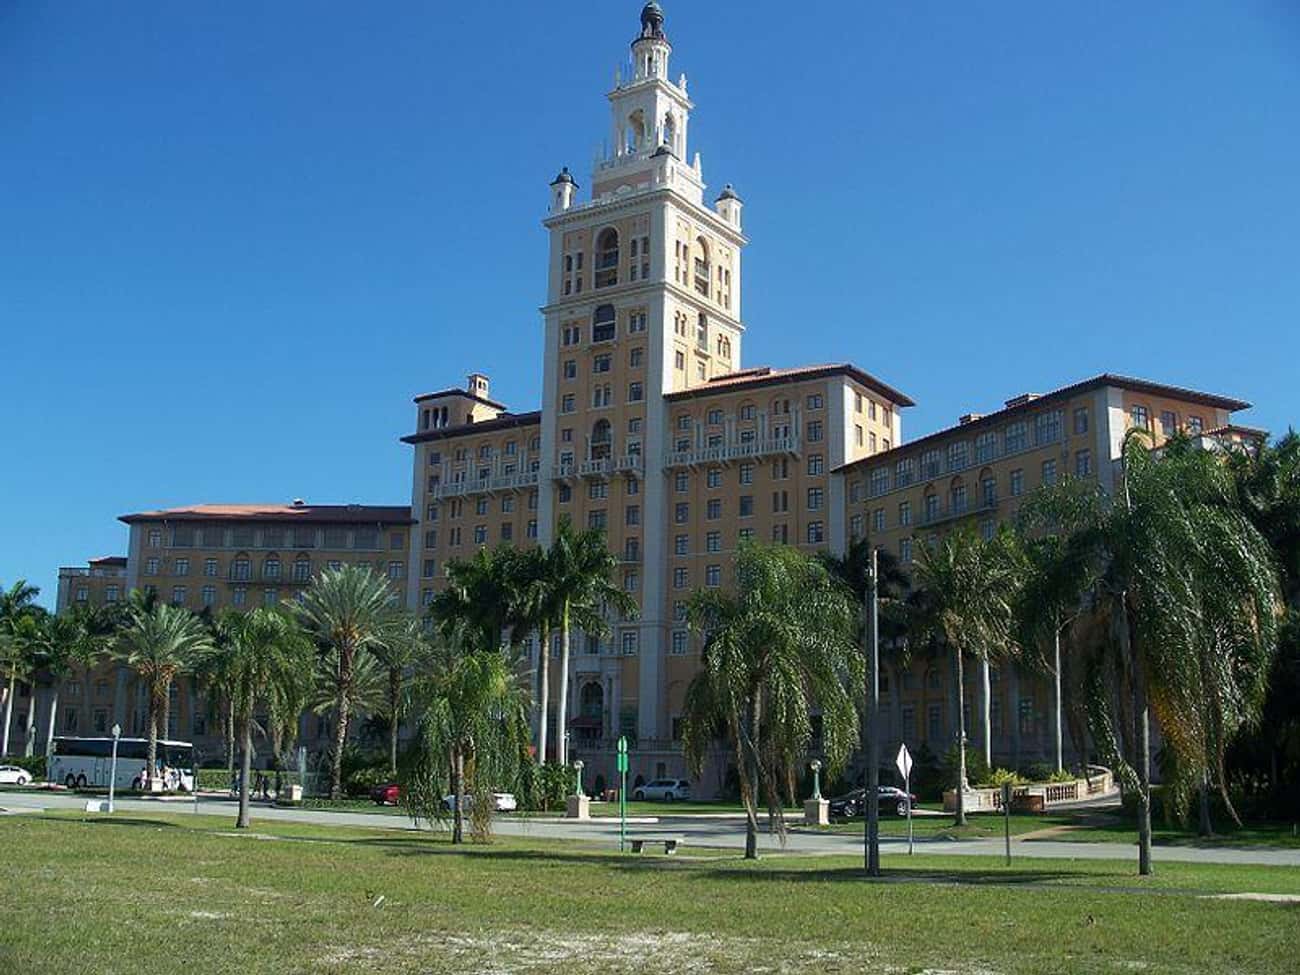 Florida: The Biltmore Hotel